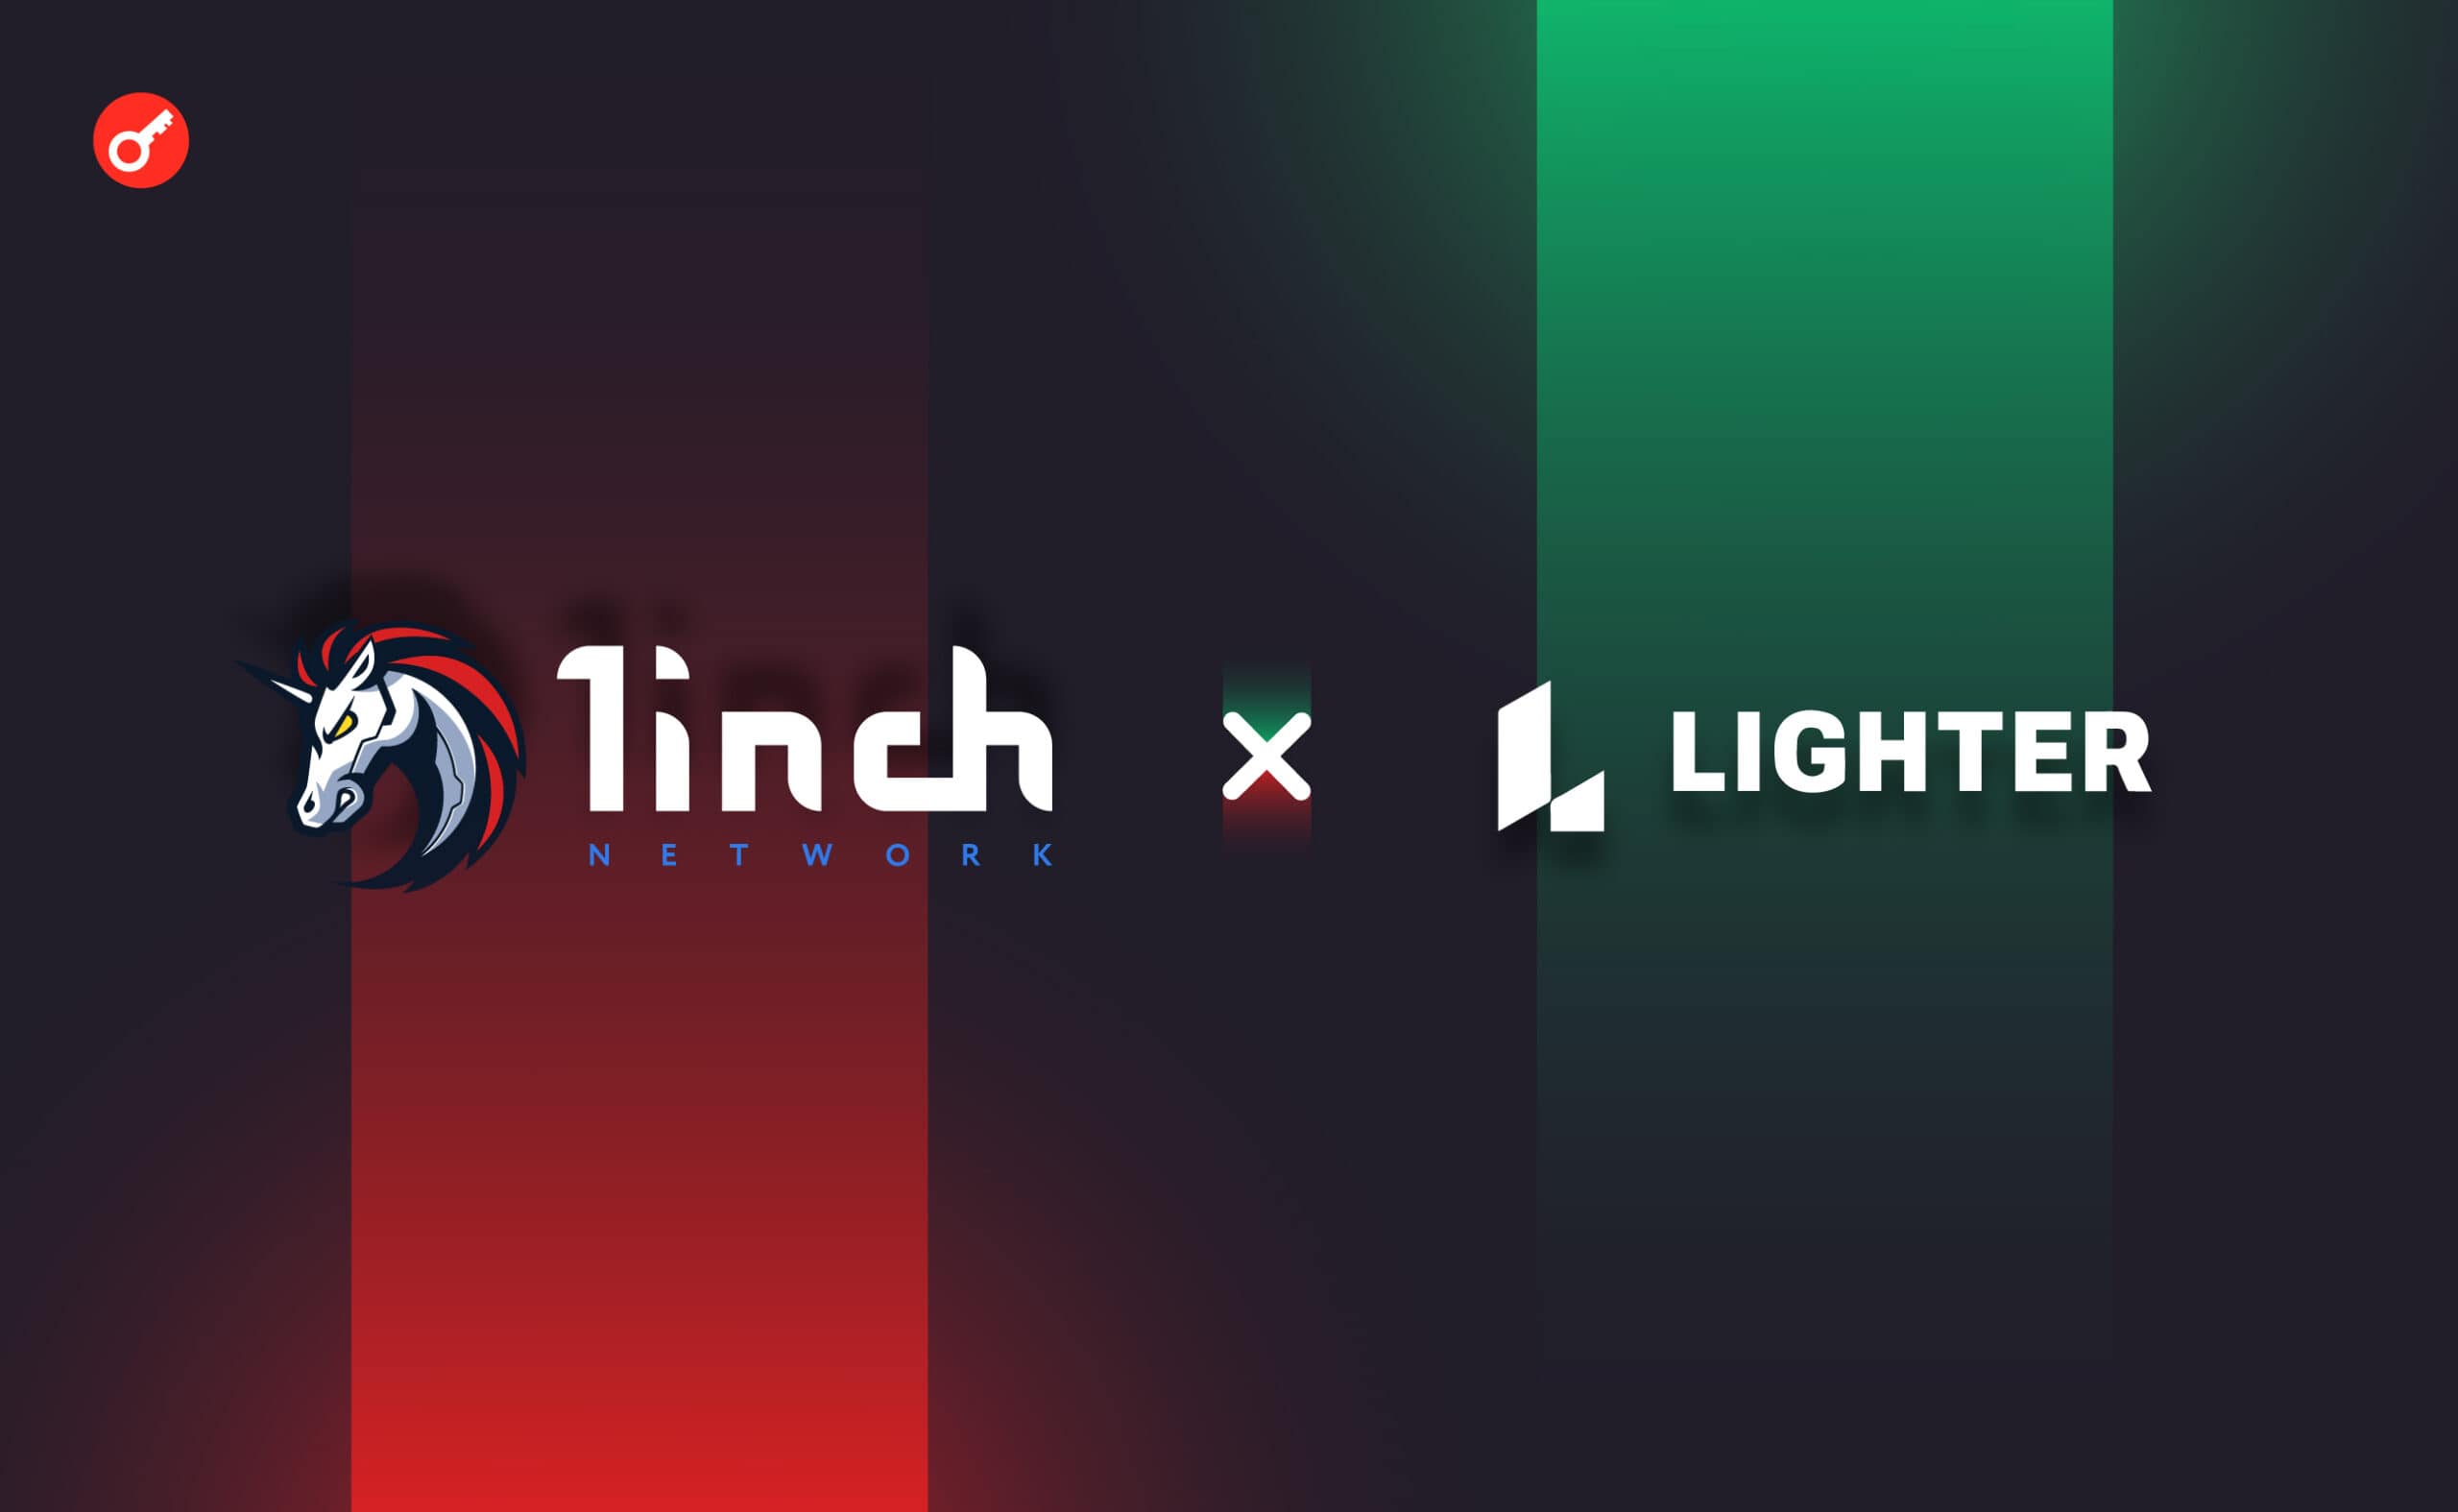 1inch Network ogłosiło partnerstwo z Lighter.xyz. Główny kolaż wiadomości.